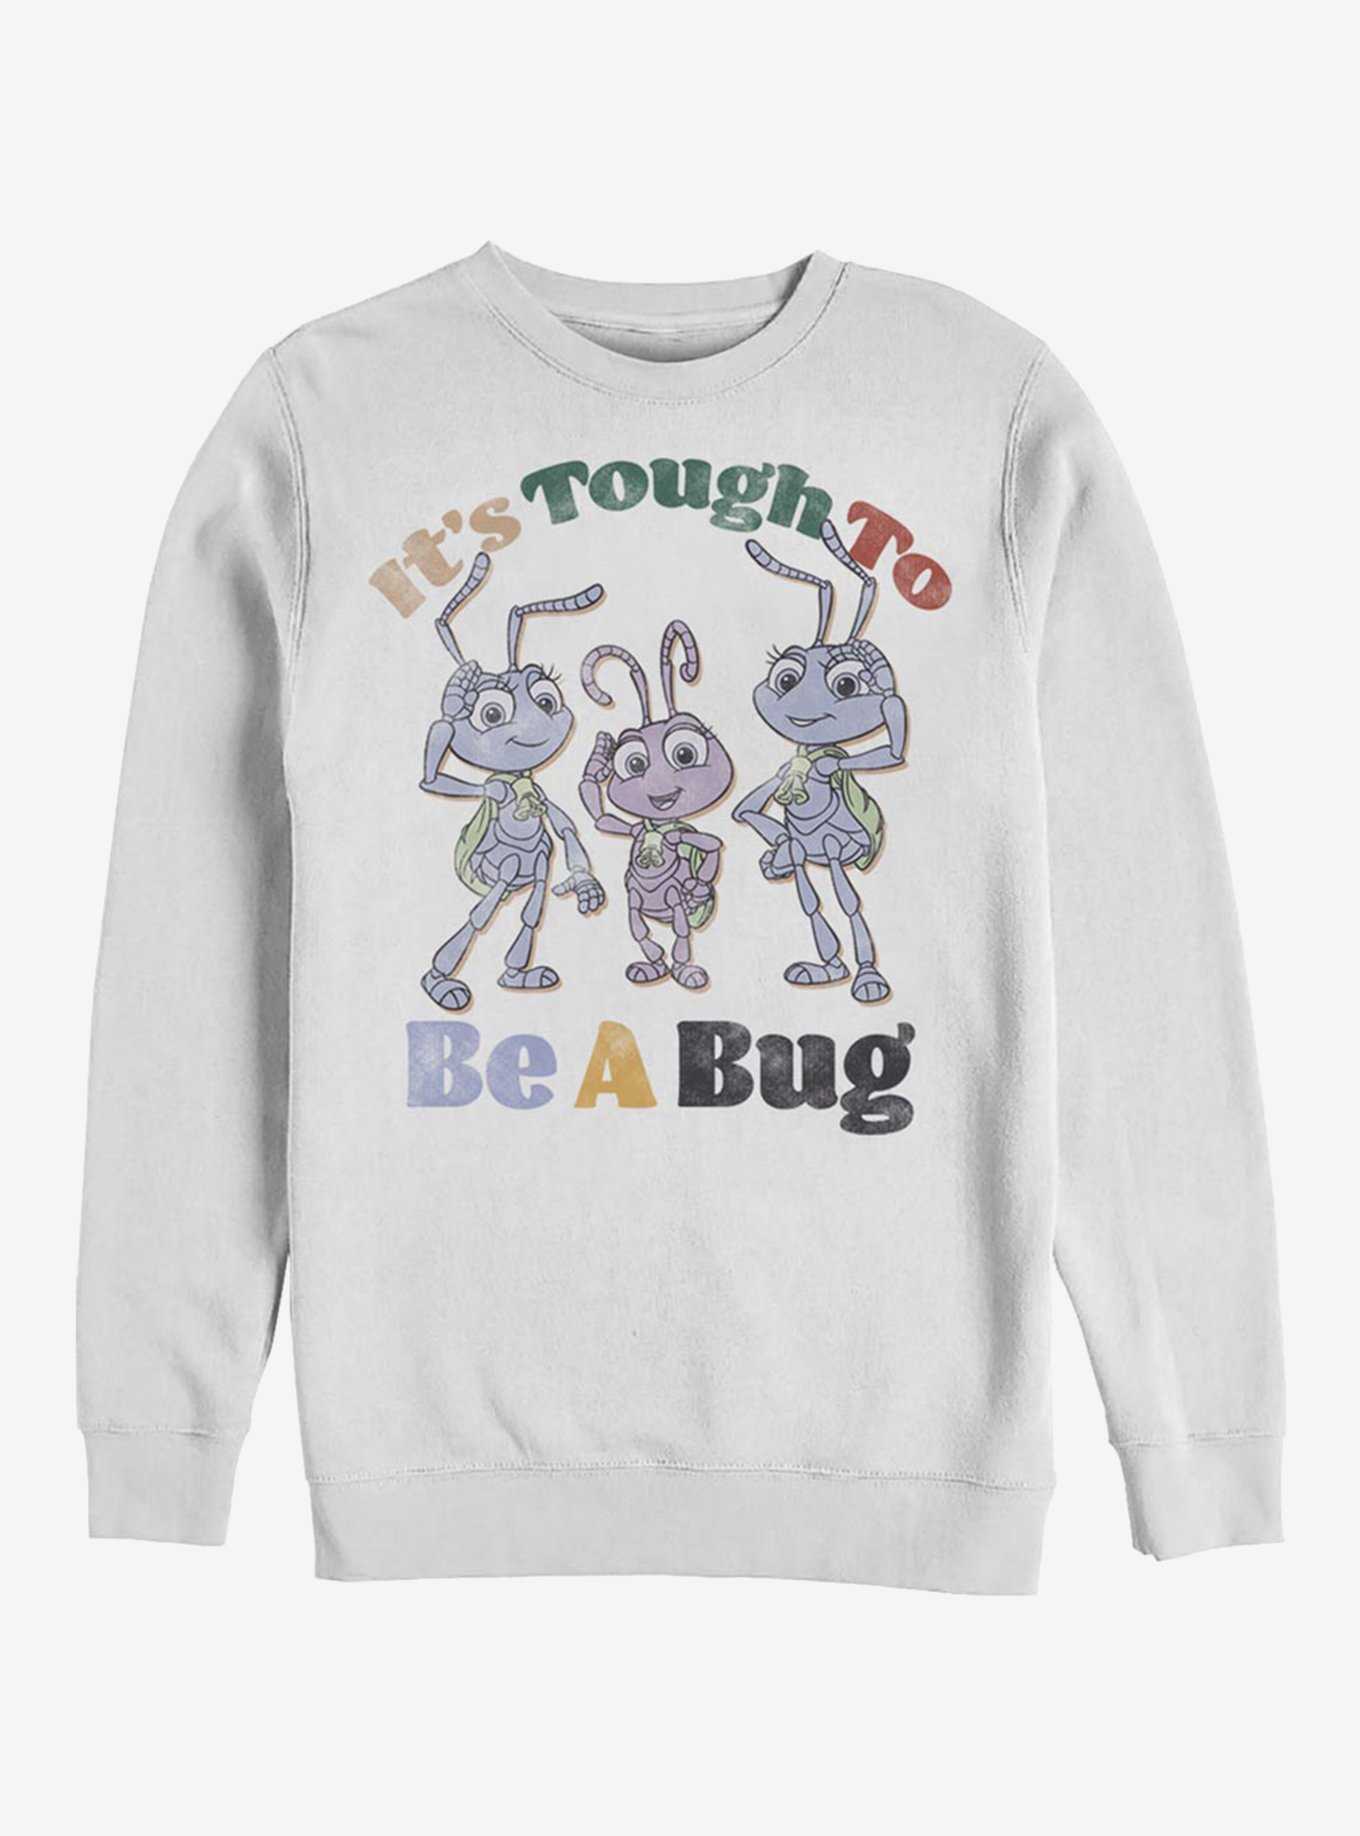 Disney Pixar A Bug's Life Big And Small Crew Sweatshirt, , hi-res